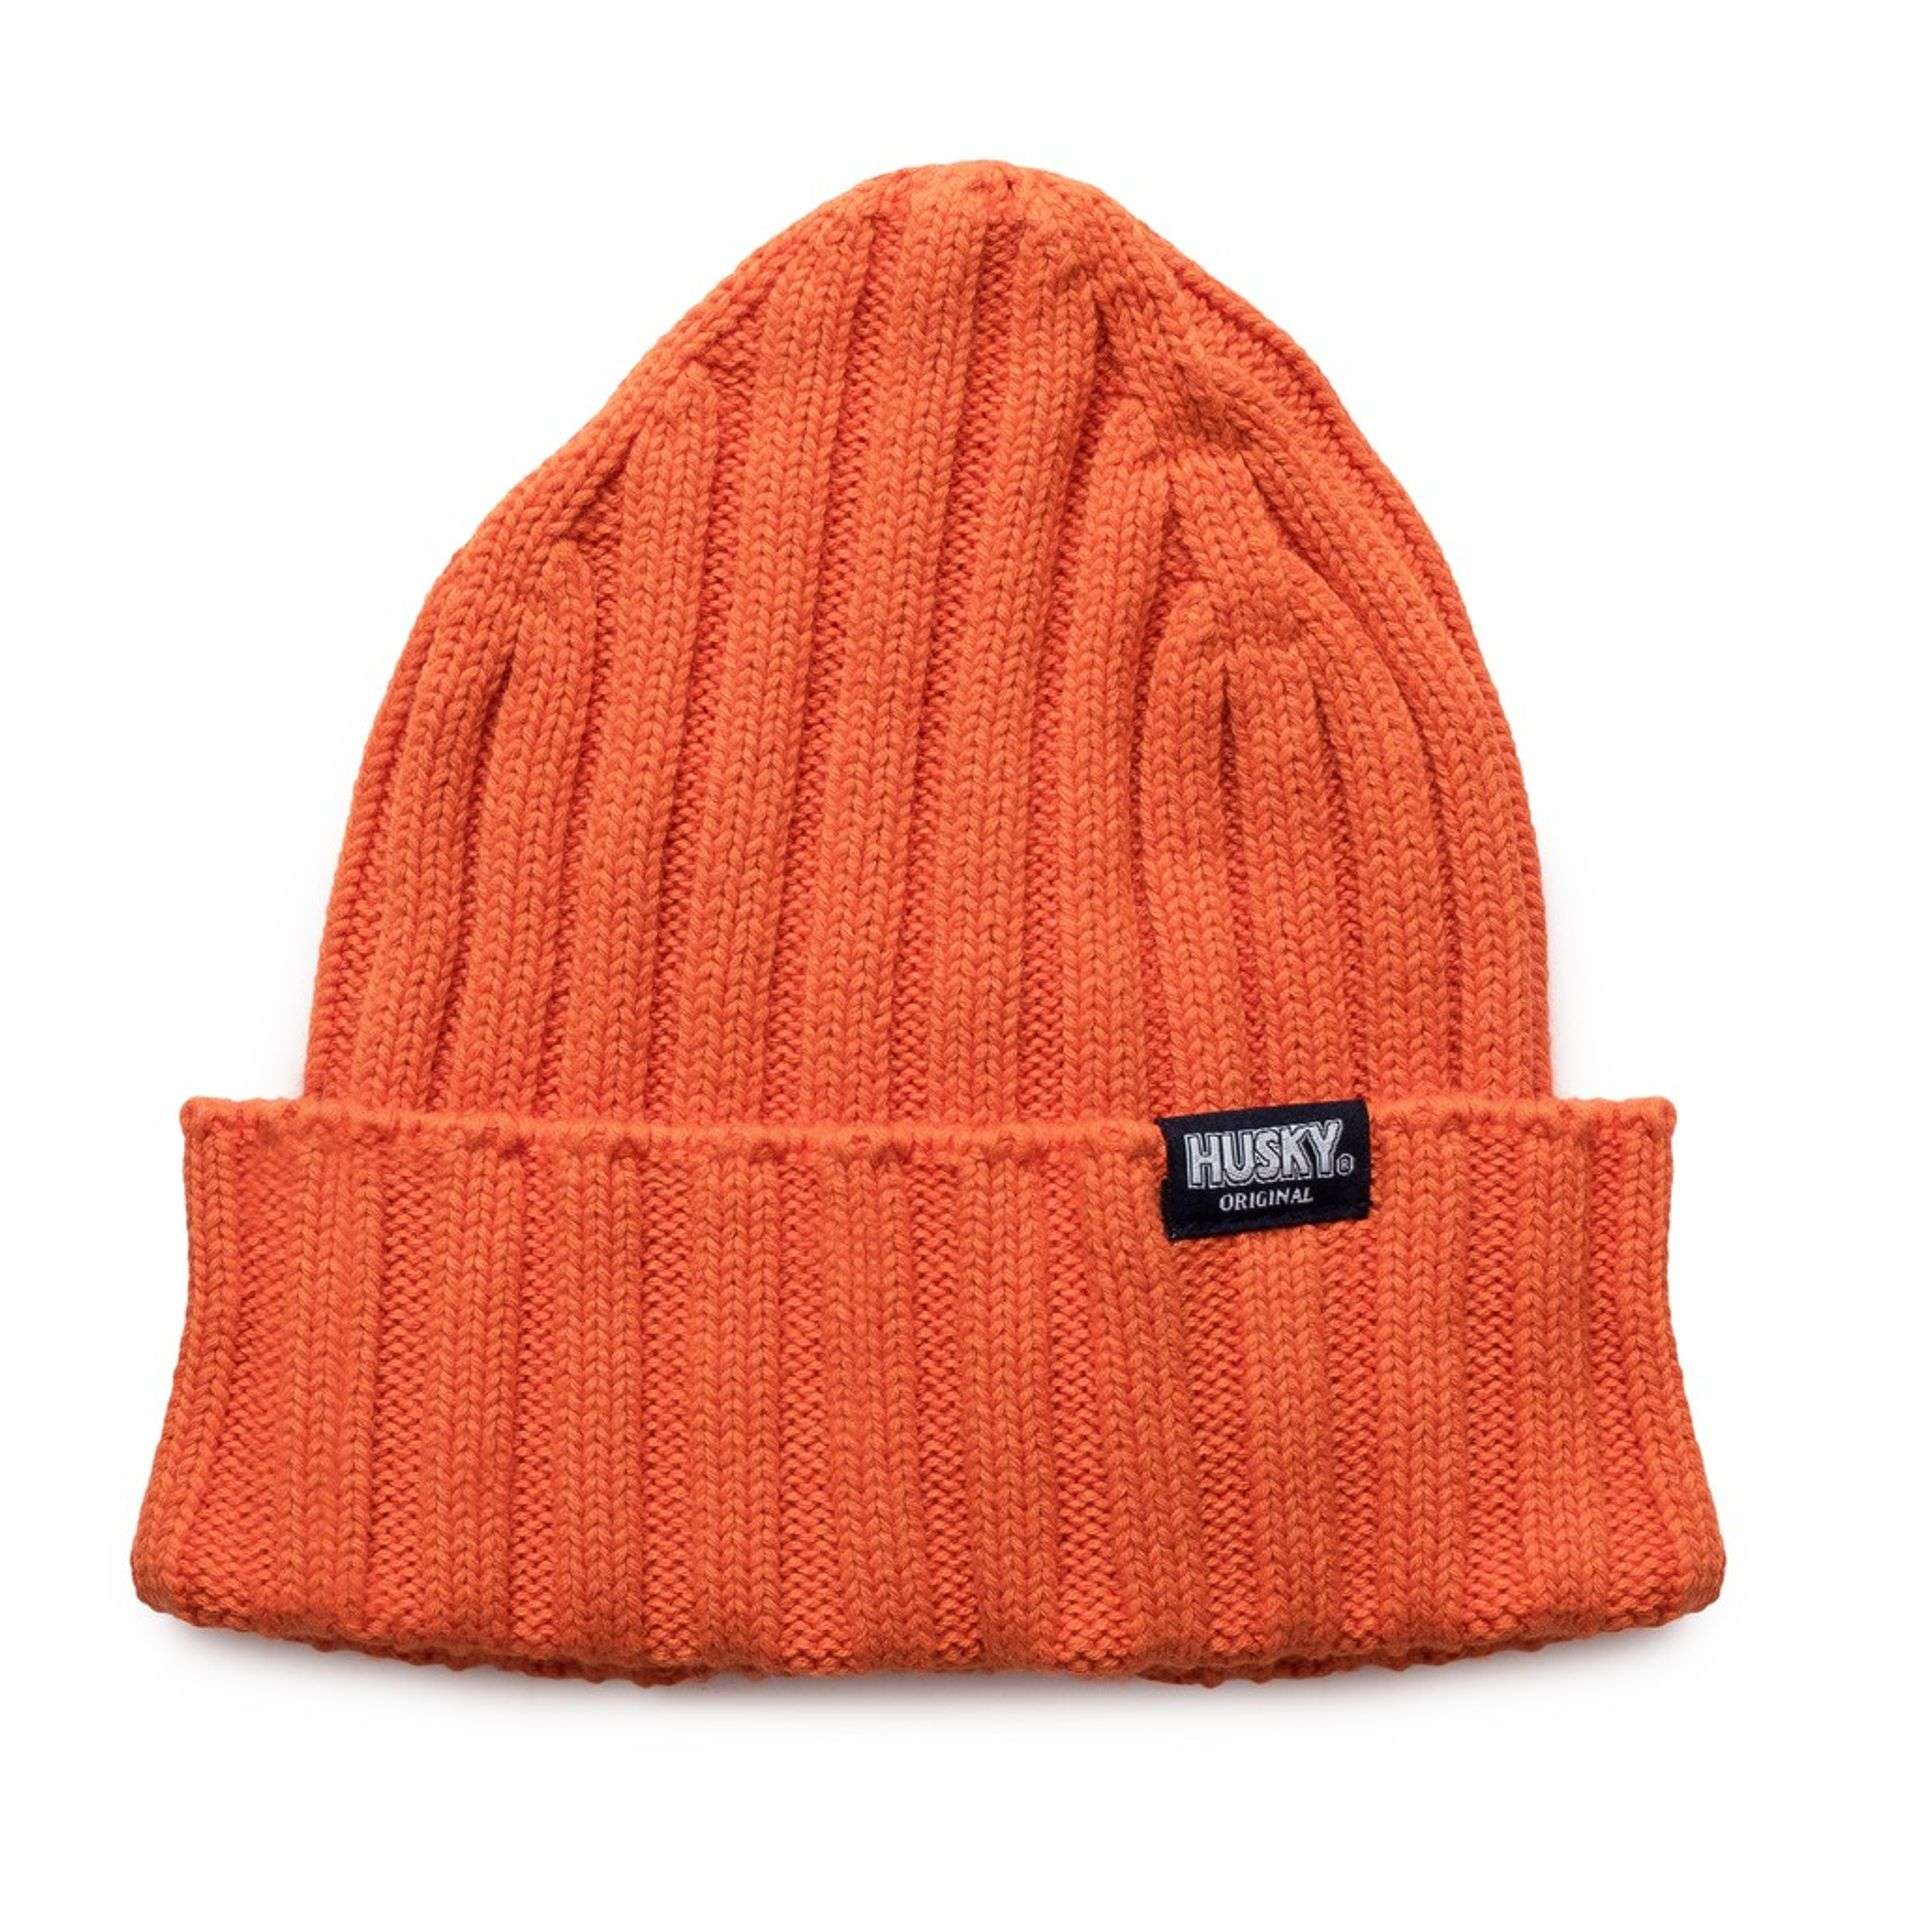 Husky Mütze orange